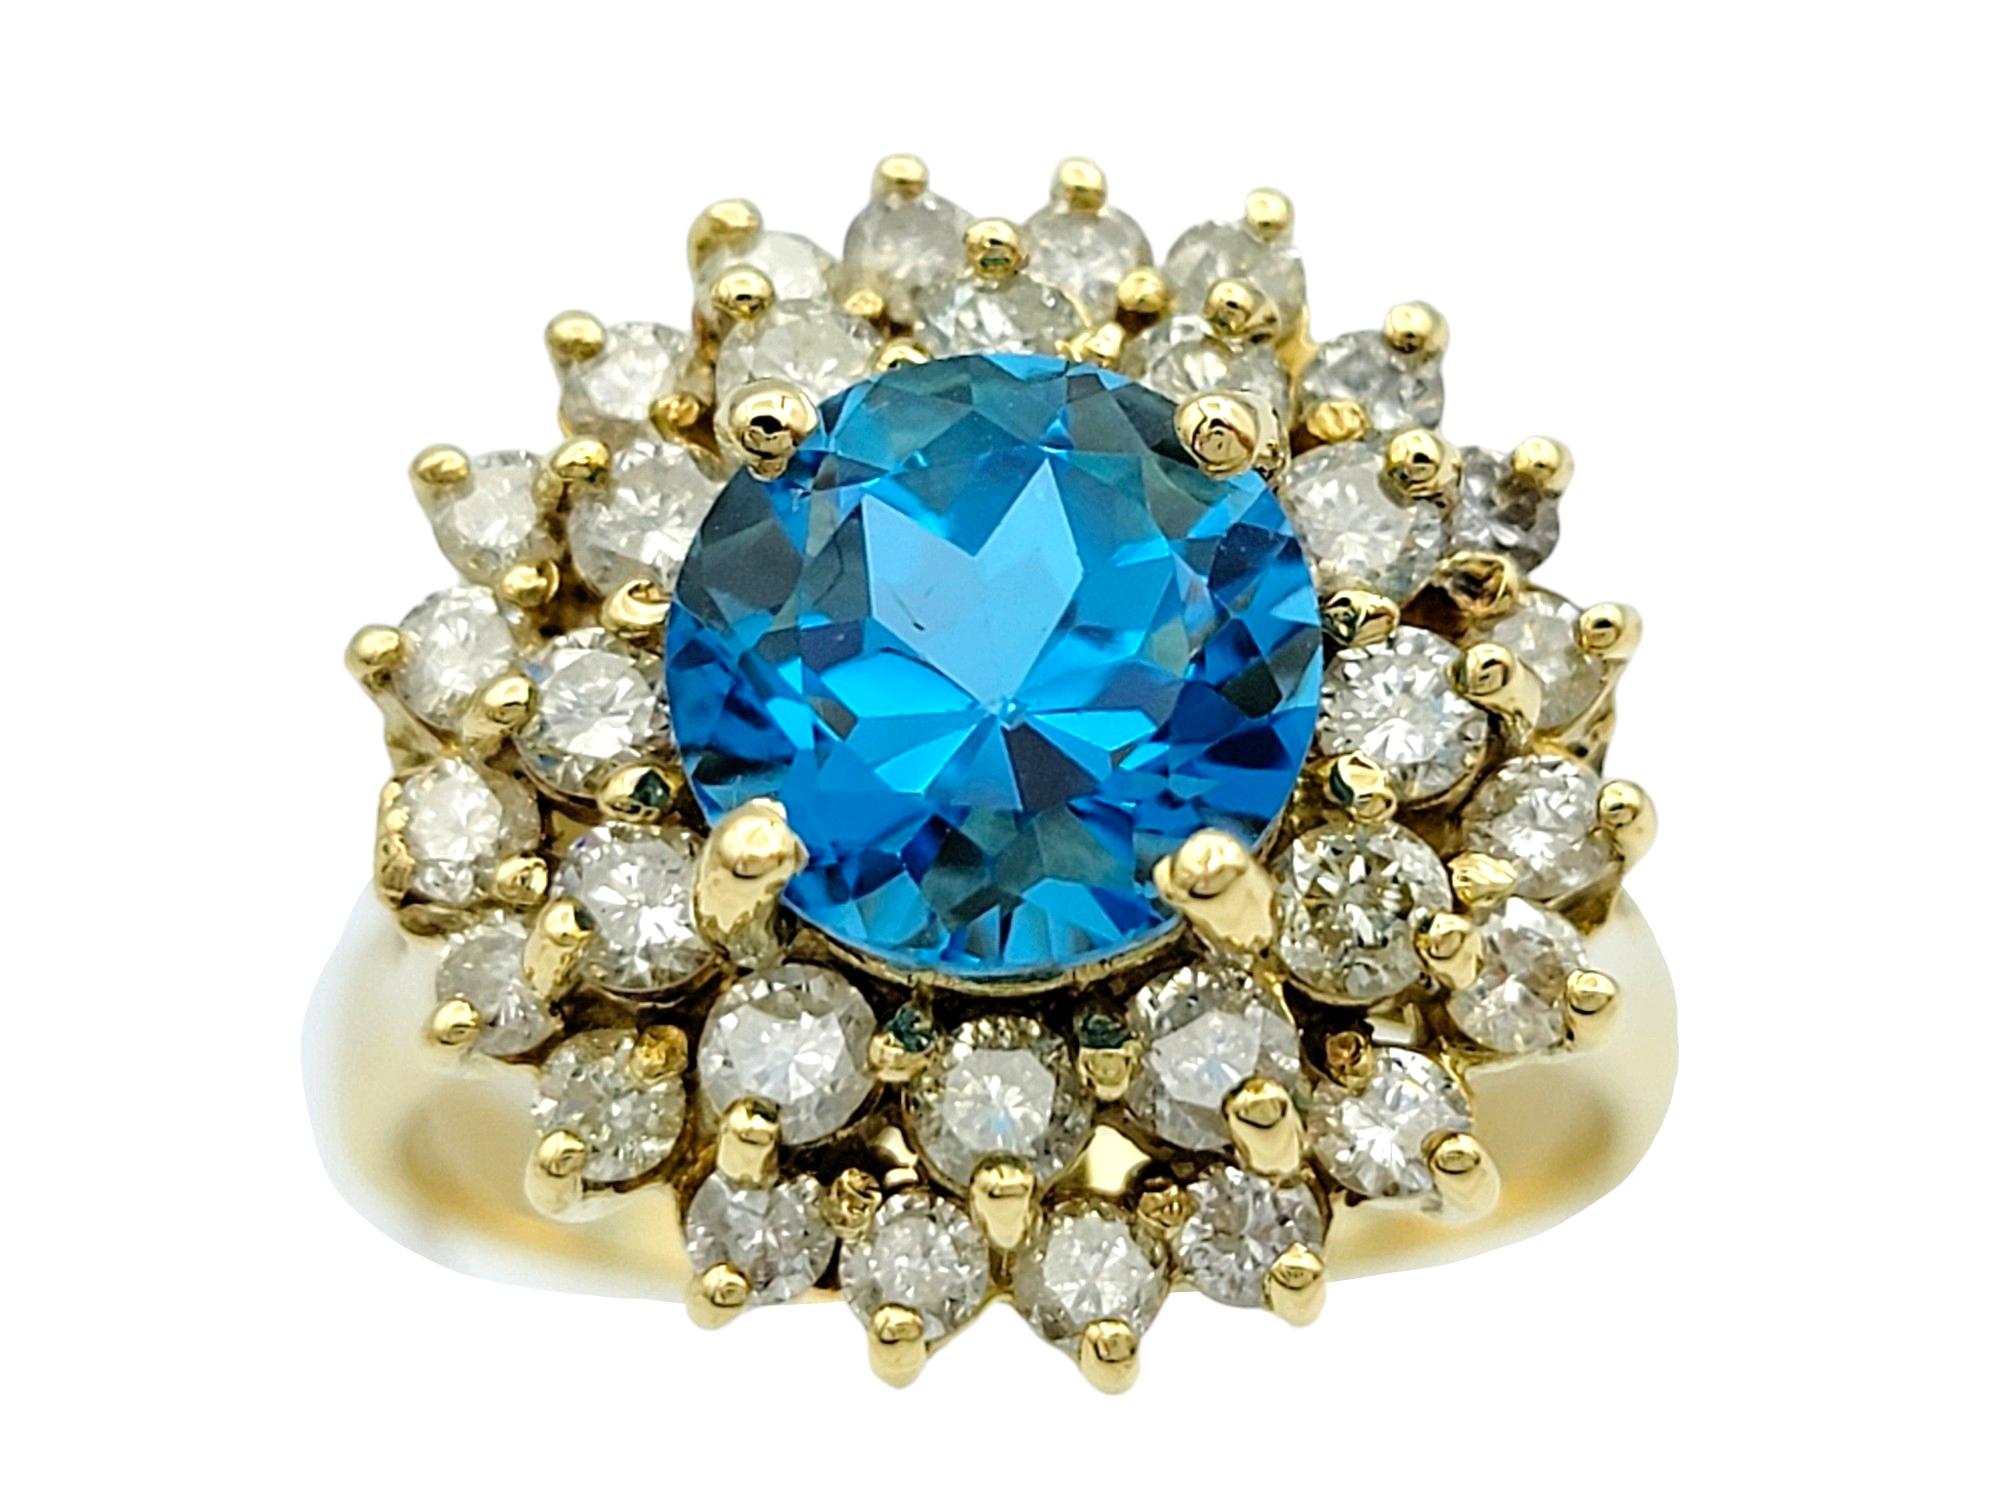 Ringgröße: 11.5

Dieser wunderschöne Ring aus 18 Karat Gelbgold mit blauem Topas und doppeltem Halo-Diamanten ist ein bezauberndes und elegantes Schmuckstück. In der Mitte des Rings befindet sich ein faszinierender Blautopas, der einen ruhigen und